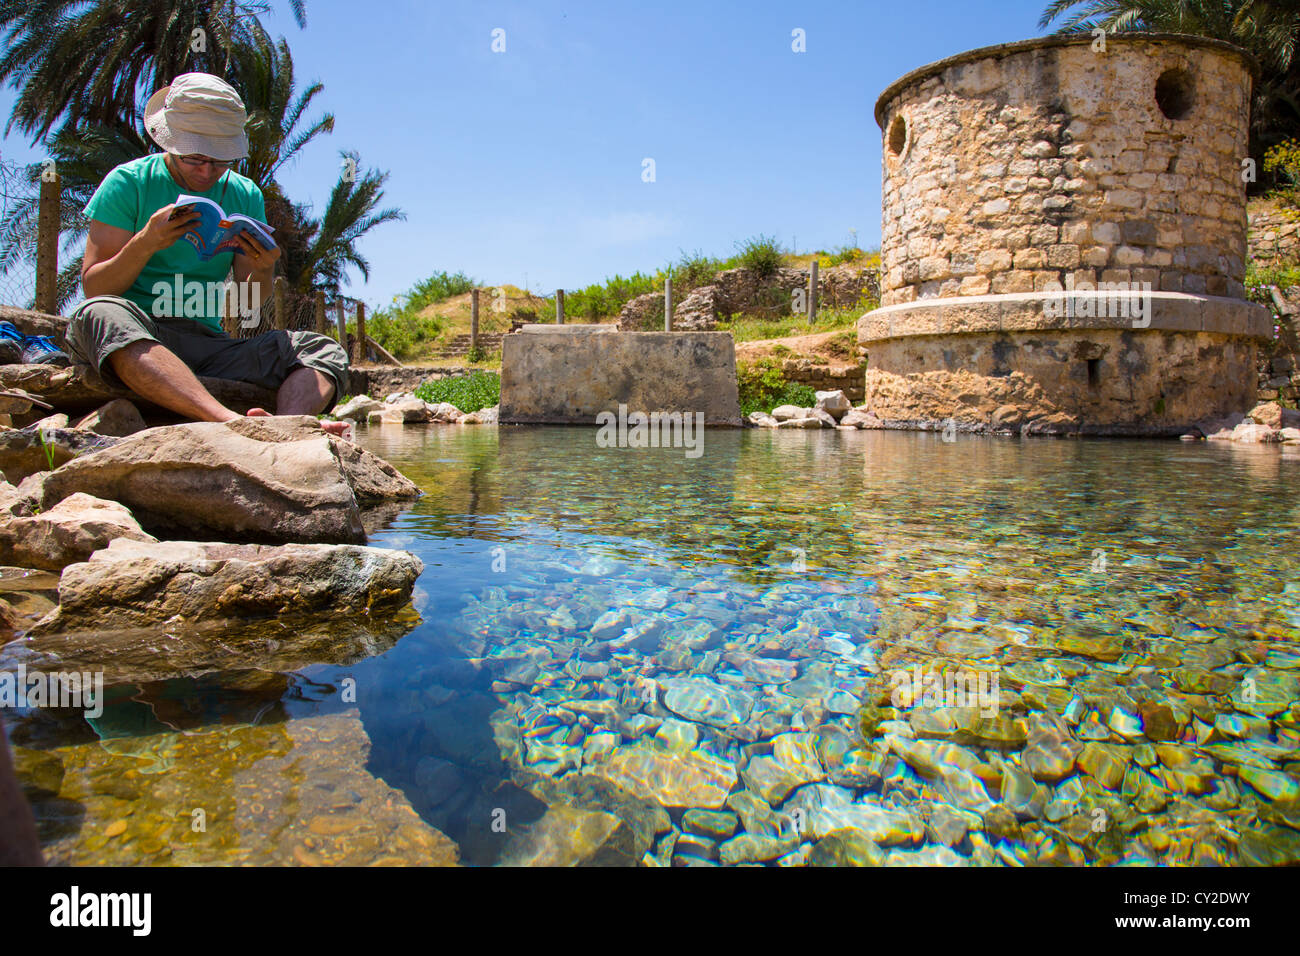 Primavera naturale presso le rovine Romane di Bulla Regia vicino a Jendouba Tunisia Foto Stock